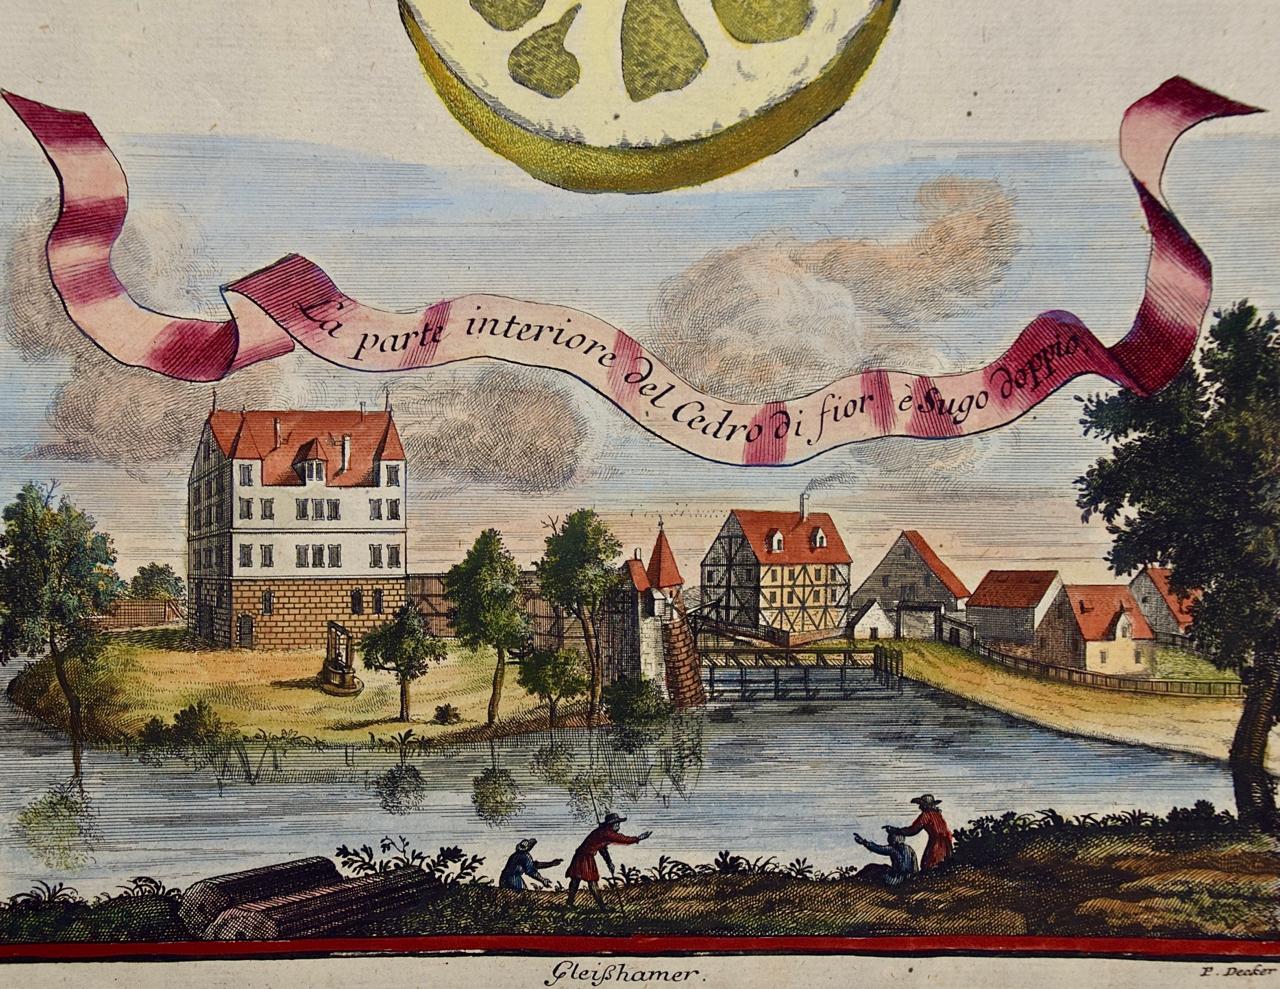 Gravure à la main de citrons « La parte interiore » (La partie intérieure) de Volckamer du début du 18e siècle, colorée à la main - Naturalisme Print par Johan Christoph Volkhamer